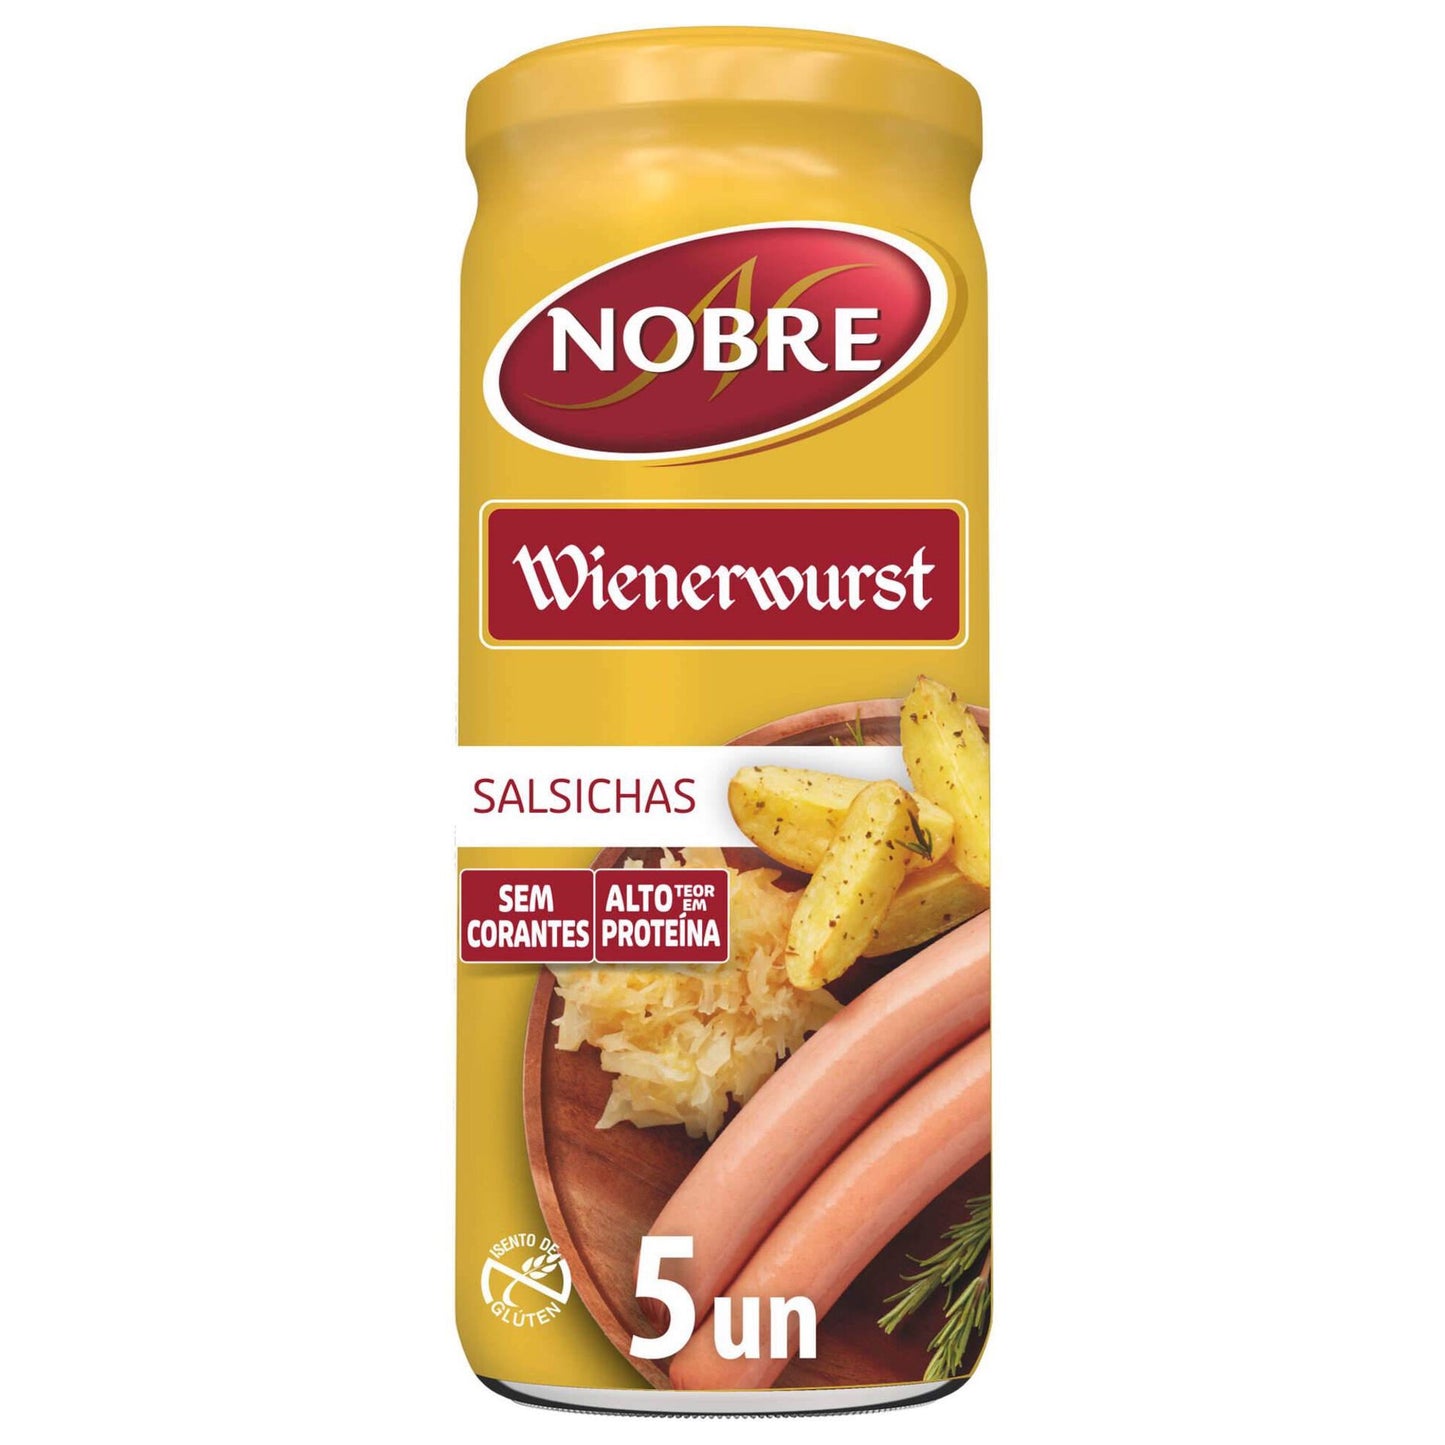 Salchichas Wienerwurst Botella 5 unidades Noble 440g